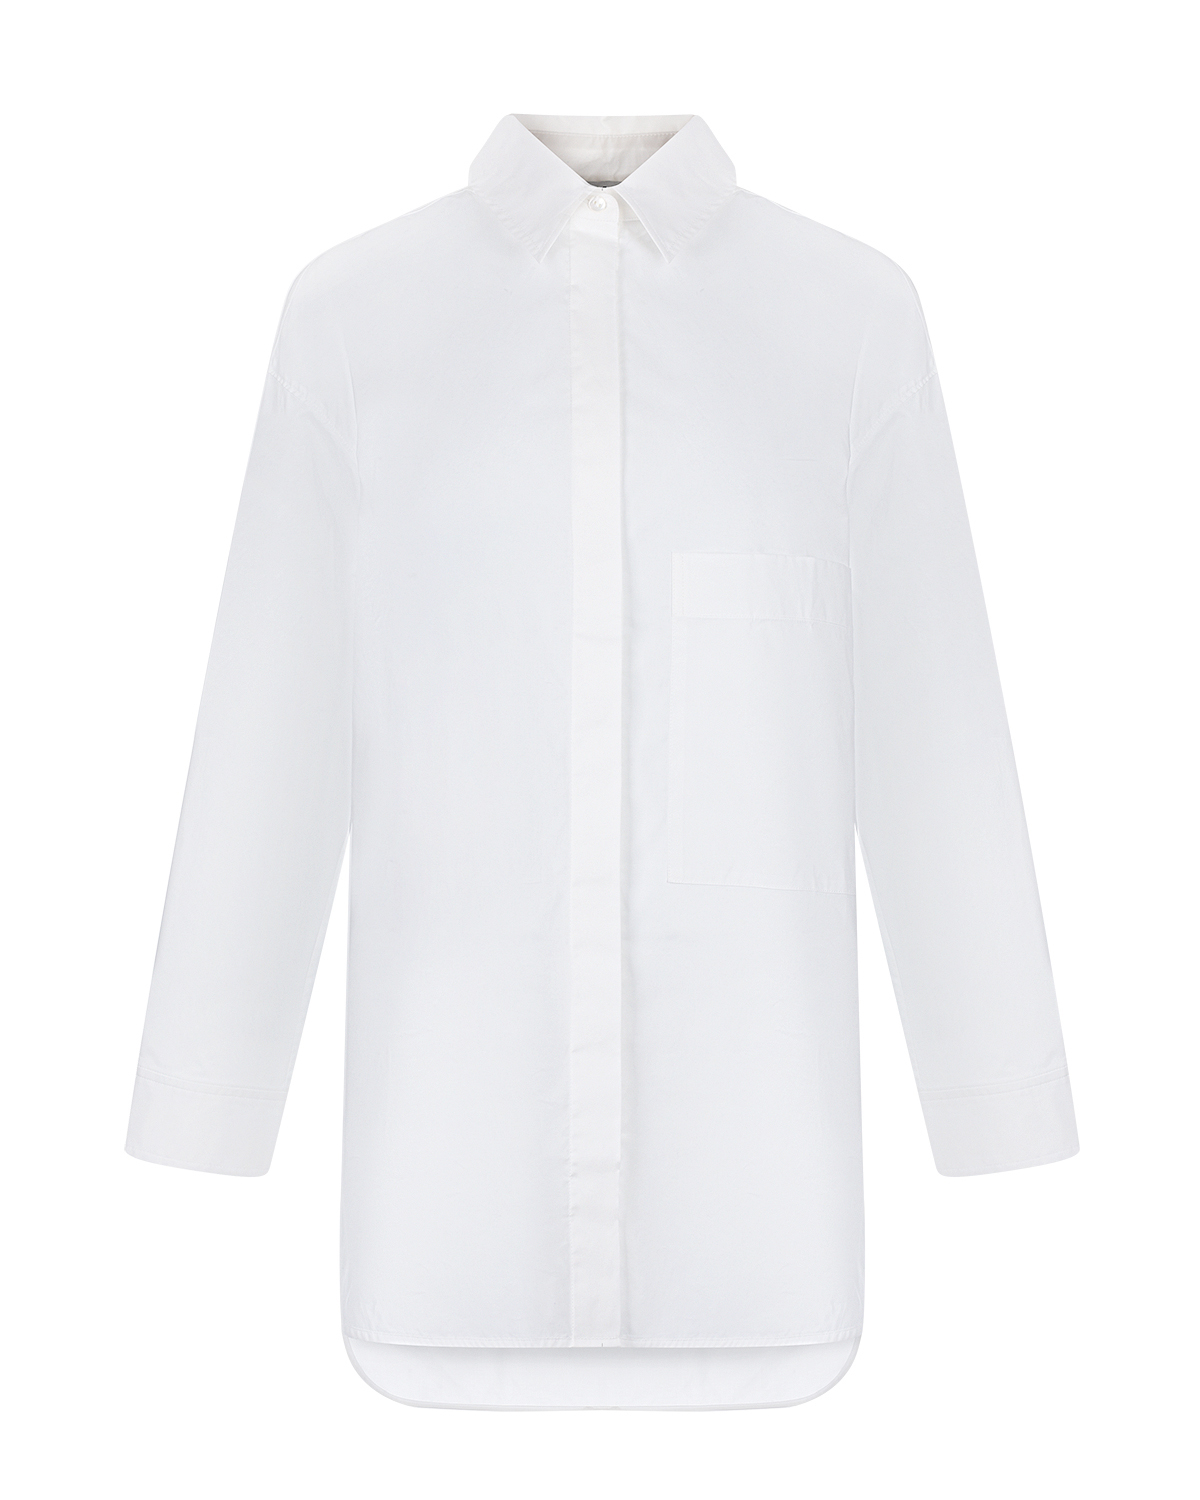 Удлиненная белая рубашка Parosh, размер 38, цвет белый - фото 1